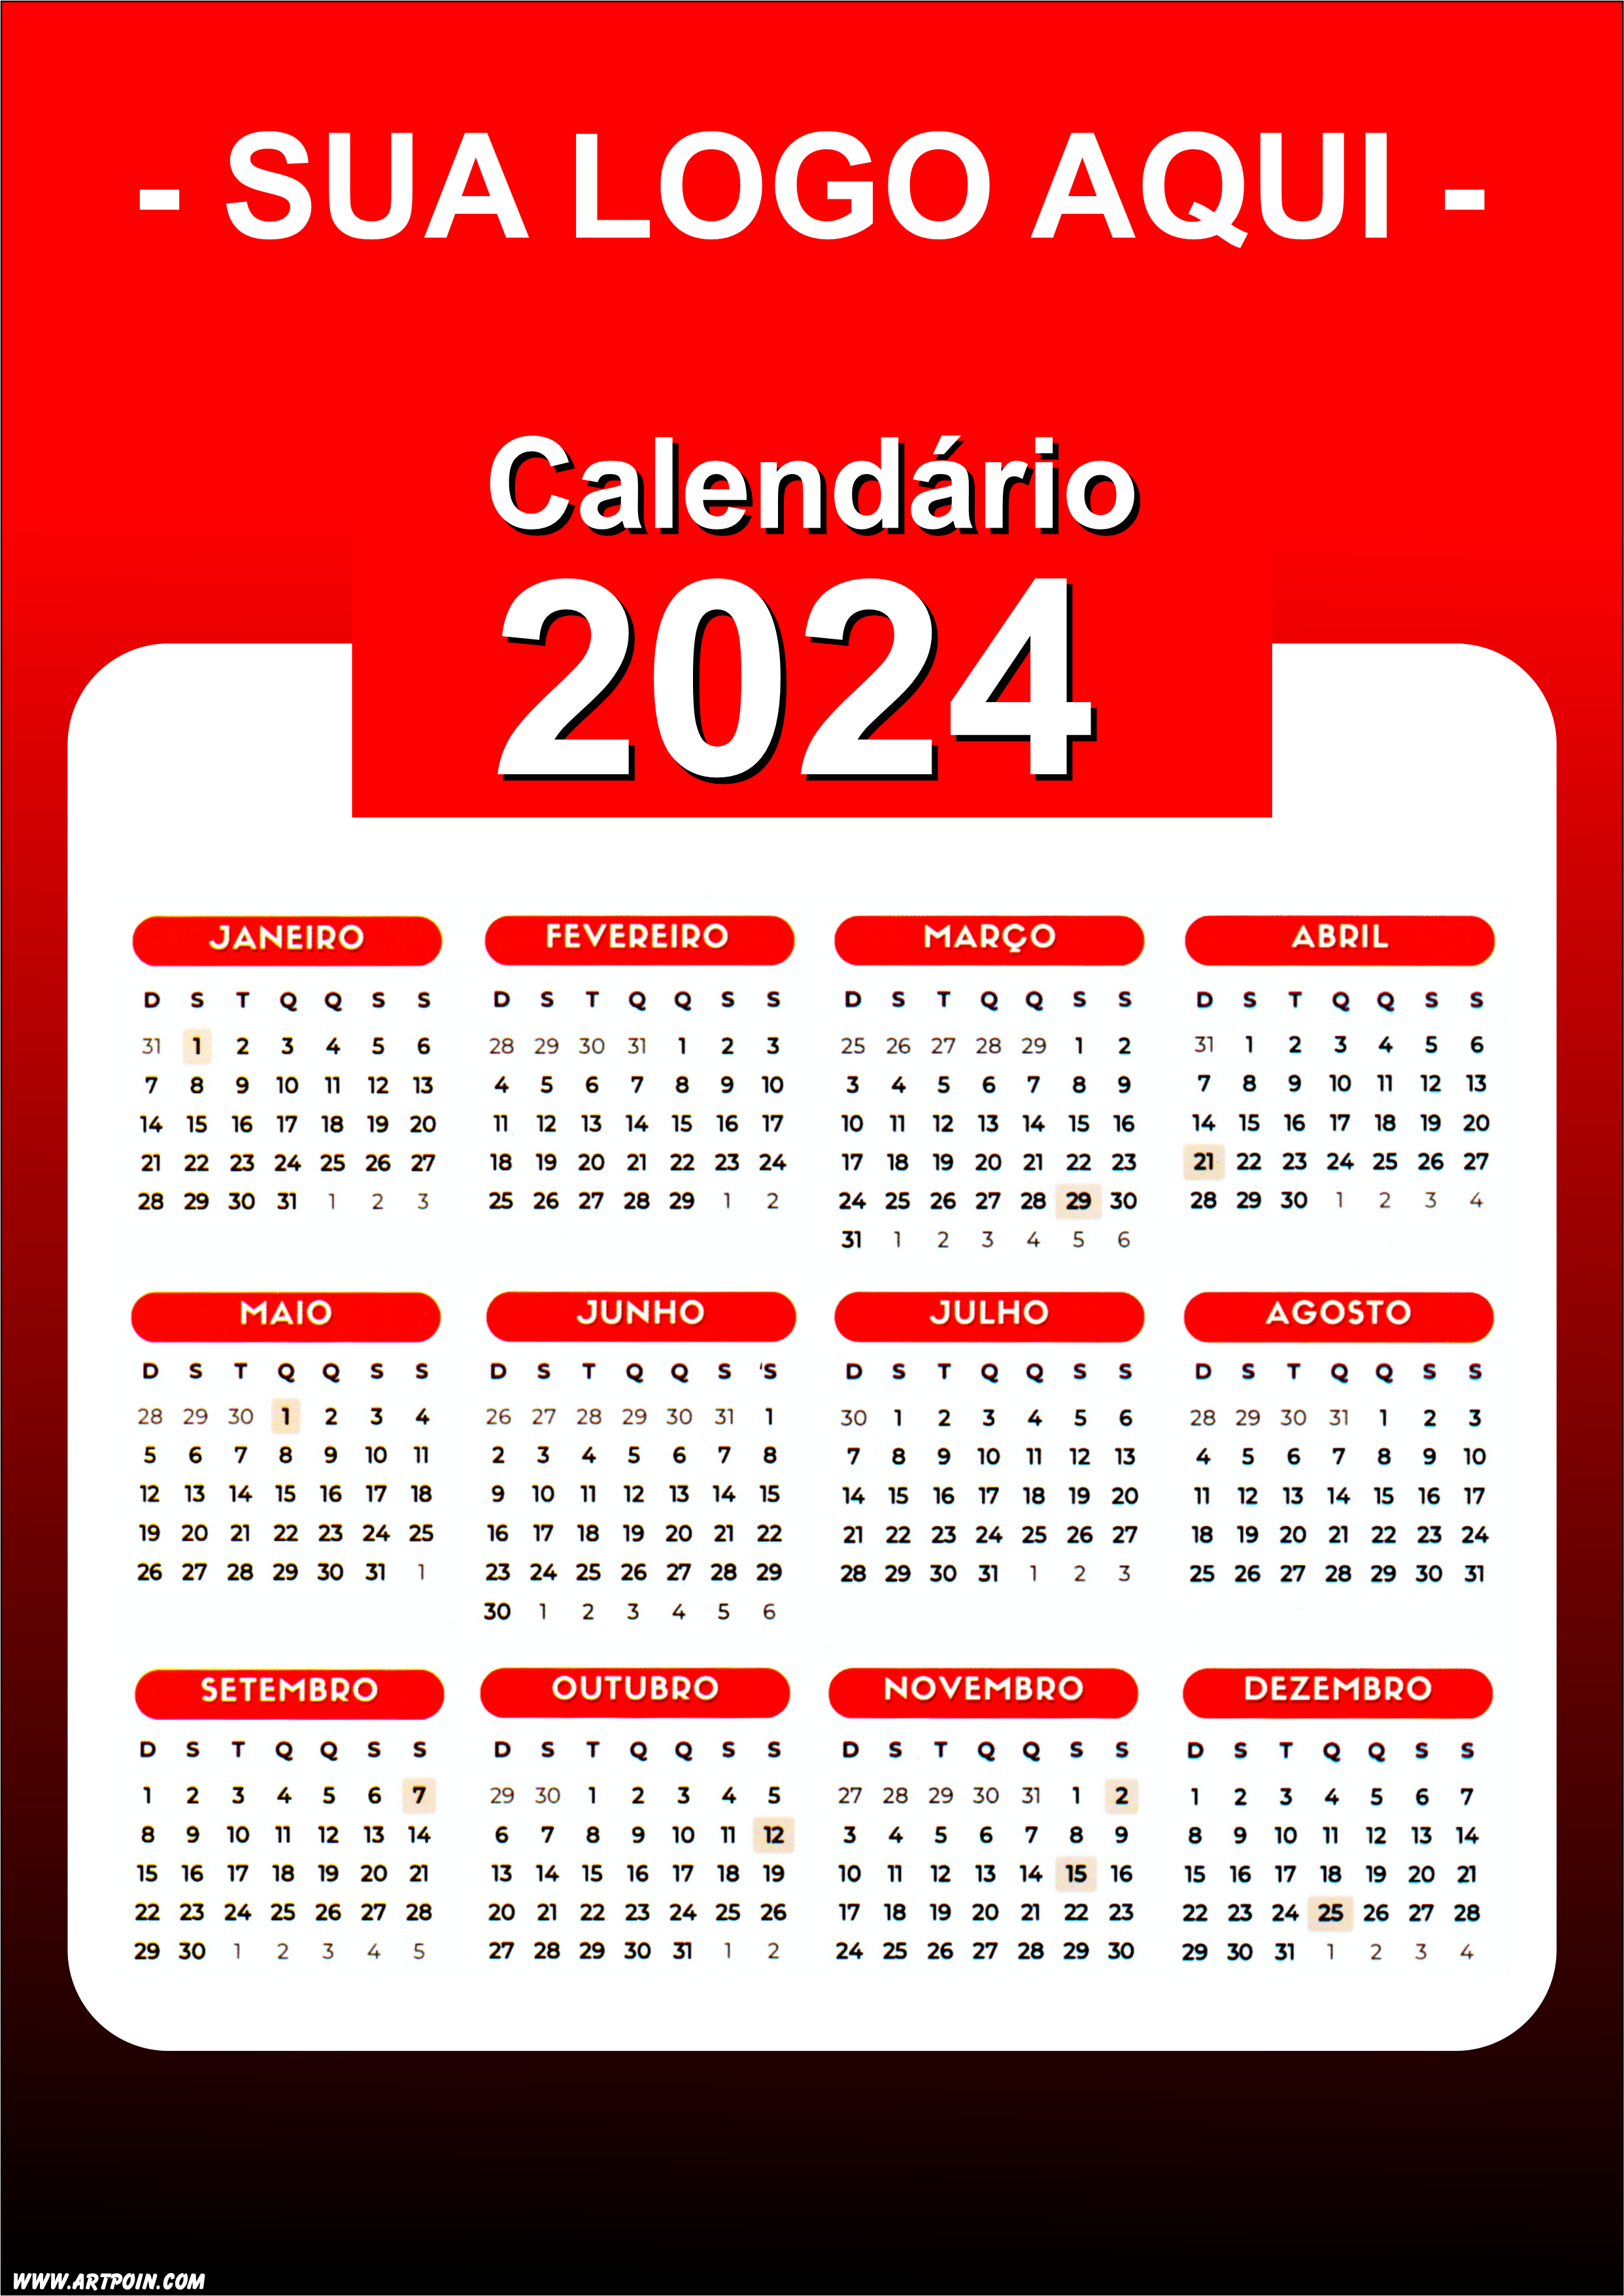 Calendário 2024 modelo vermelho para personalização com a logo da sua loja png